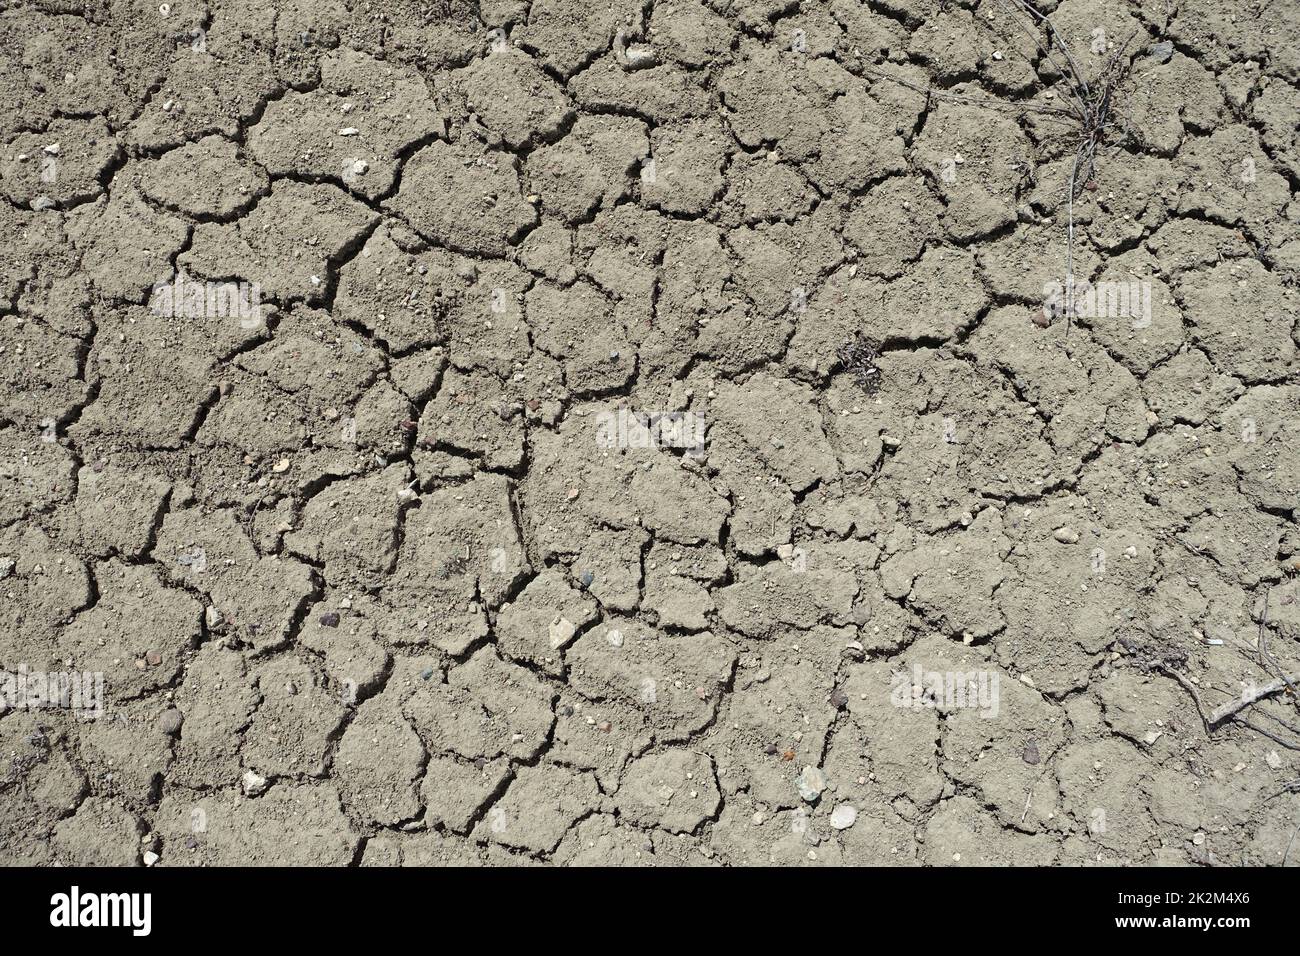 L'érosion causée par la sécheresse et la désertification, la fissuration et la division des sols due à la soif-érosion des sols et à la sécheresse Banque D'Images